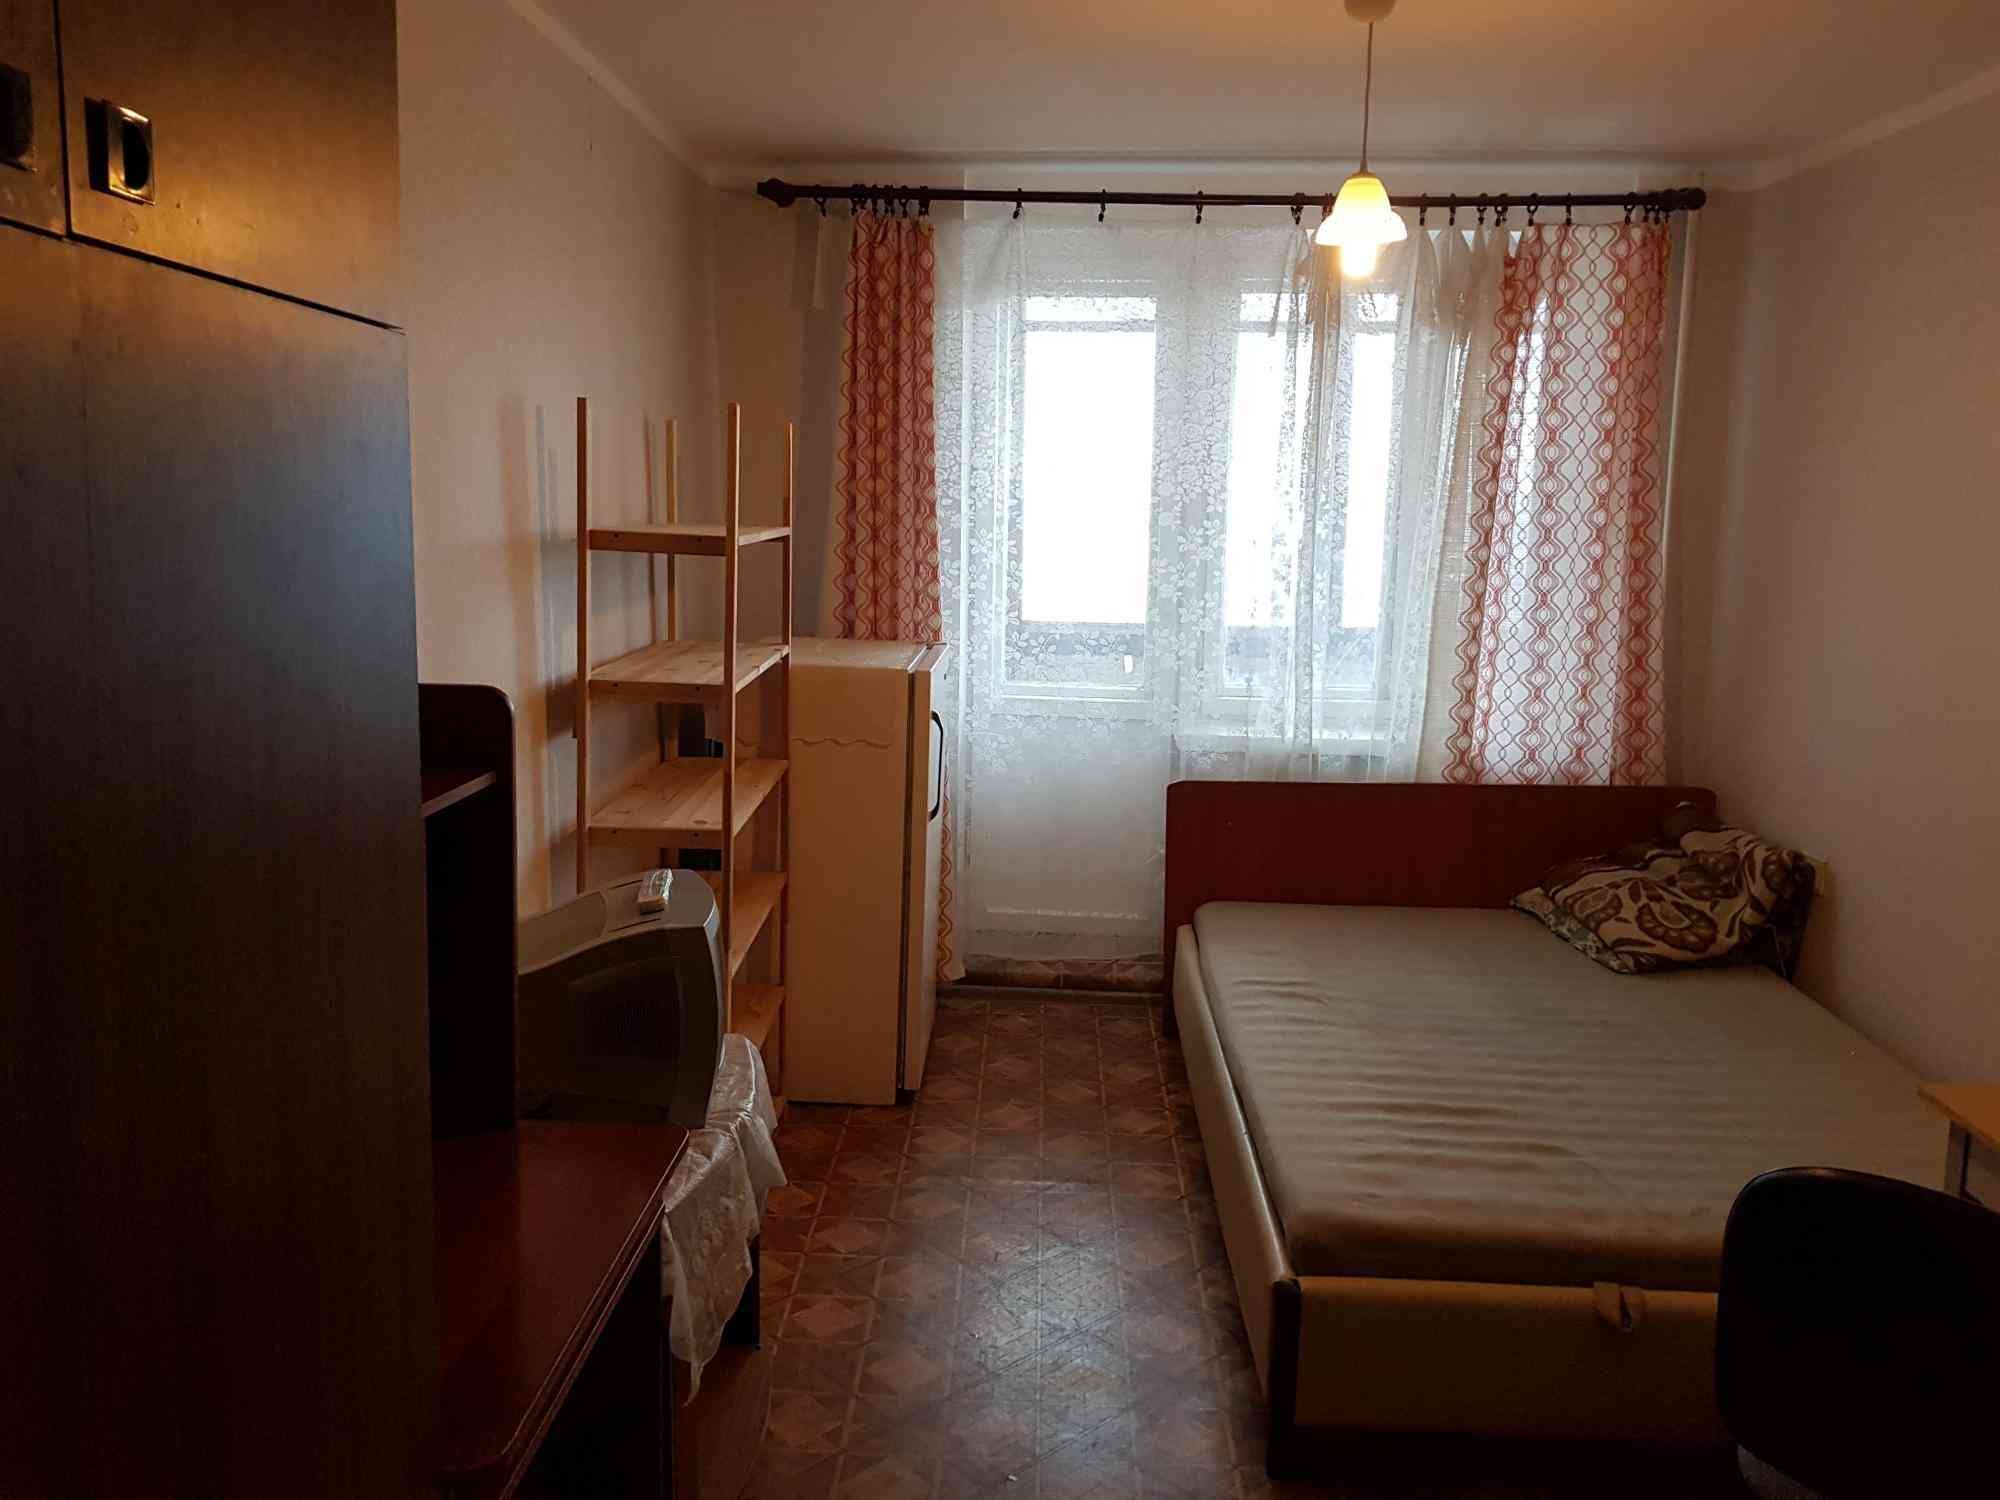 Сколько стоит снять комнату в общежитии. Комната в общежитии. Спальня в общежитии. Фотографии комнаты в общежитии. Благоустроенная комната в общежитии.